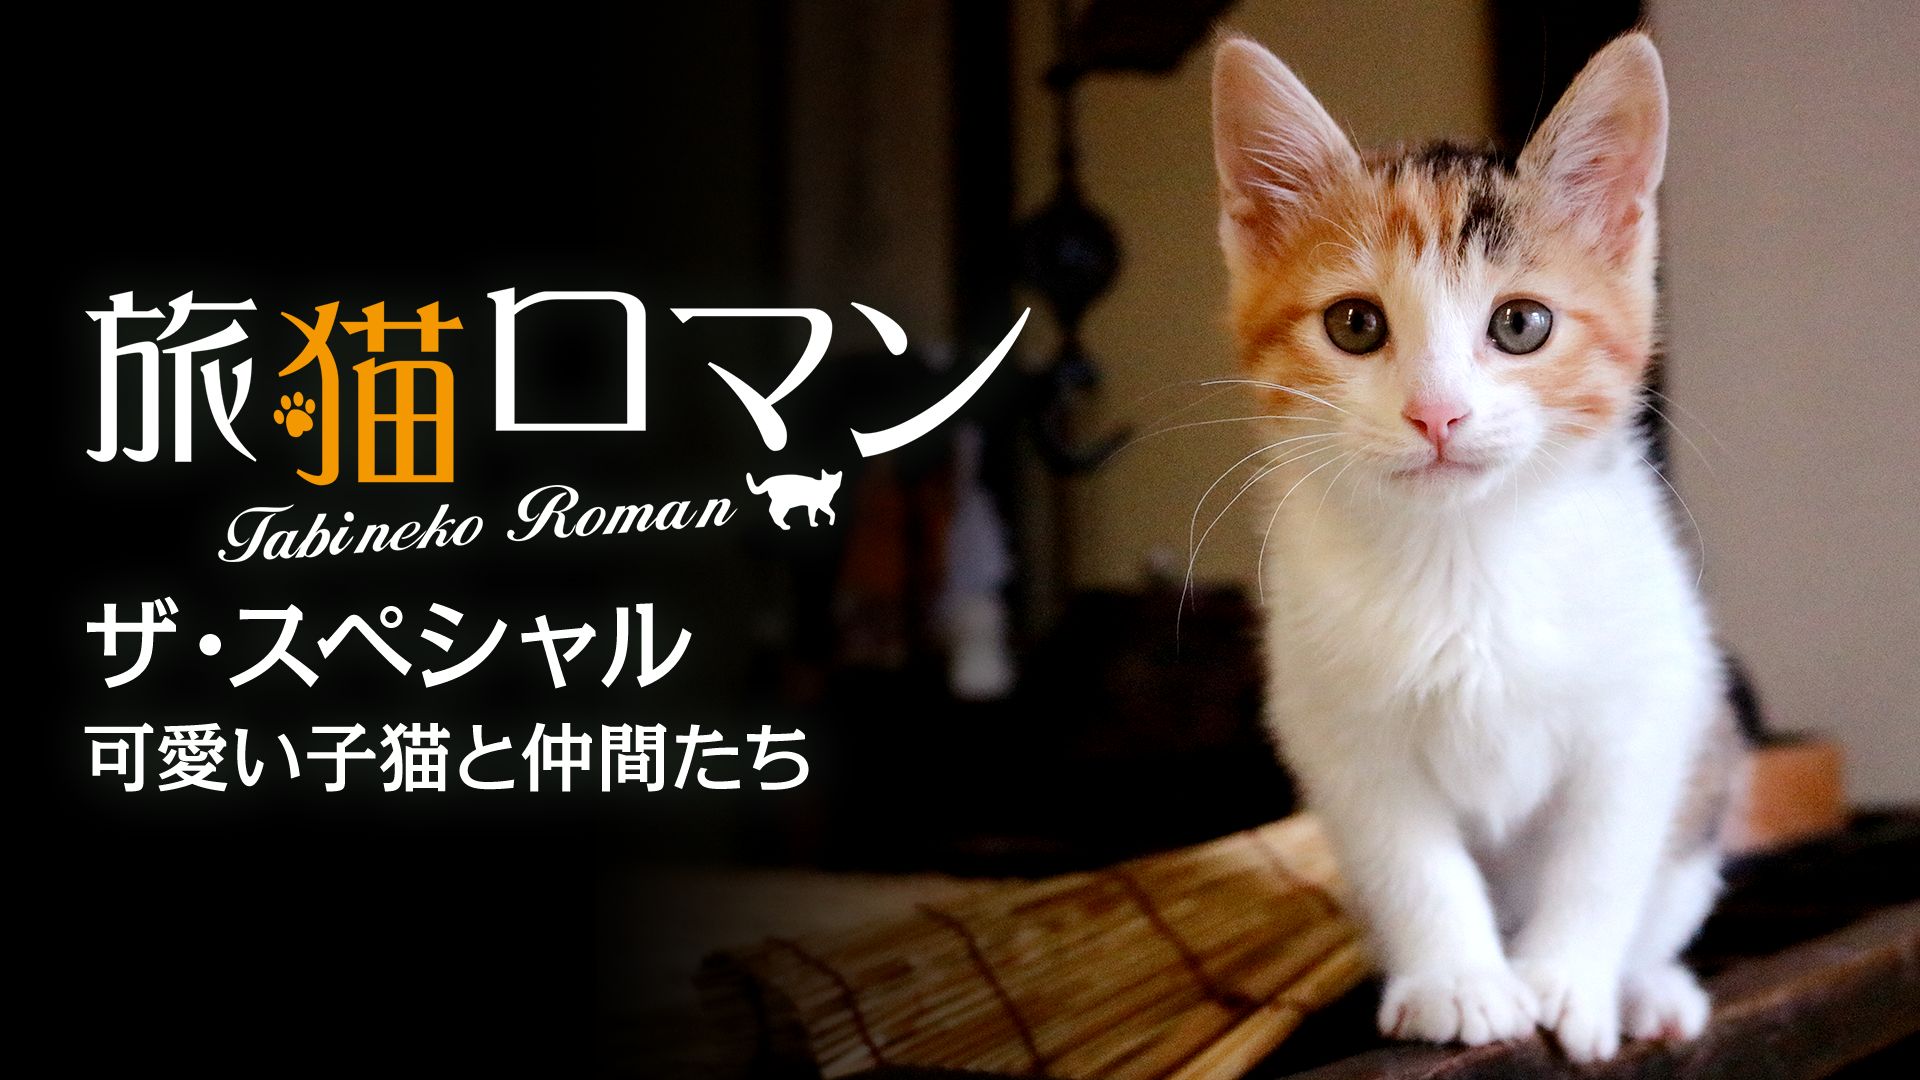 旅猫ロマン ザ スペシャル 可愛い子猫と仲間たちの動画を配信しているサービス 動画作品を探すならaukana